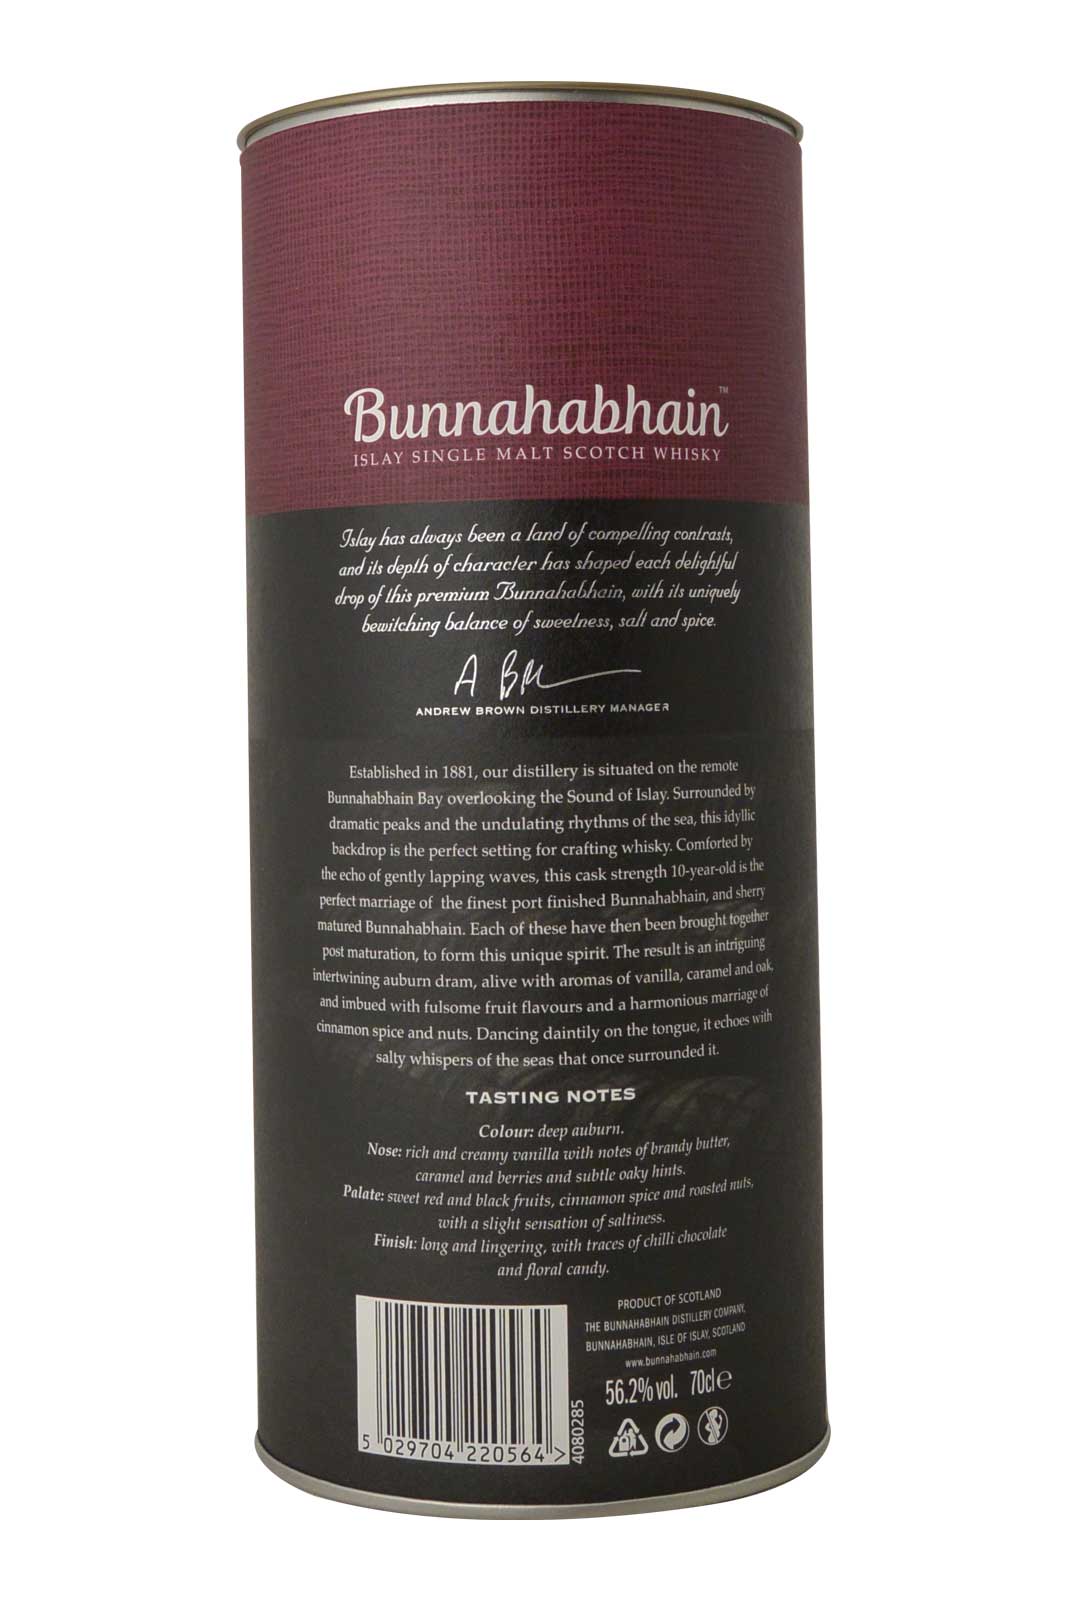 Bunnahabhain Aonadh Limited release